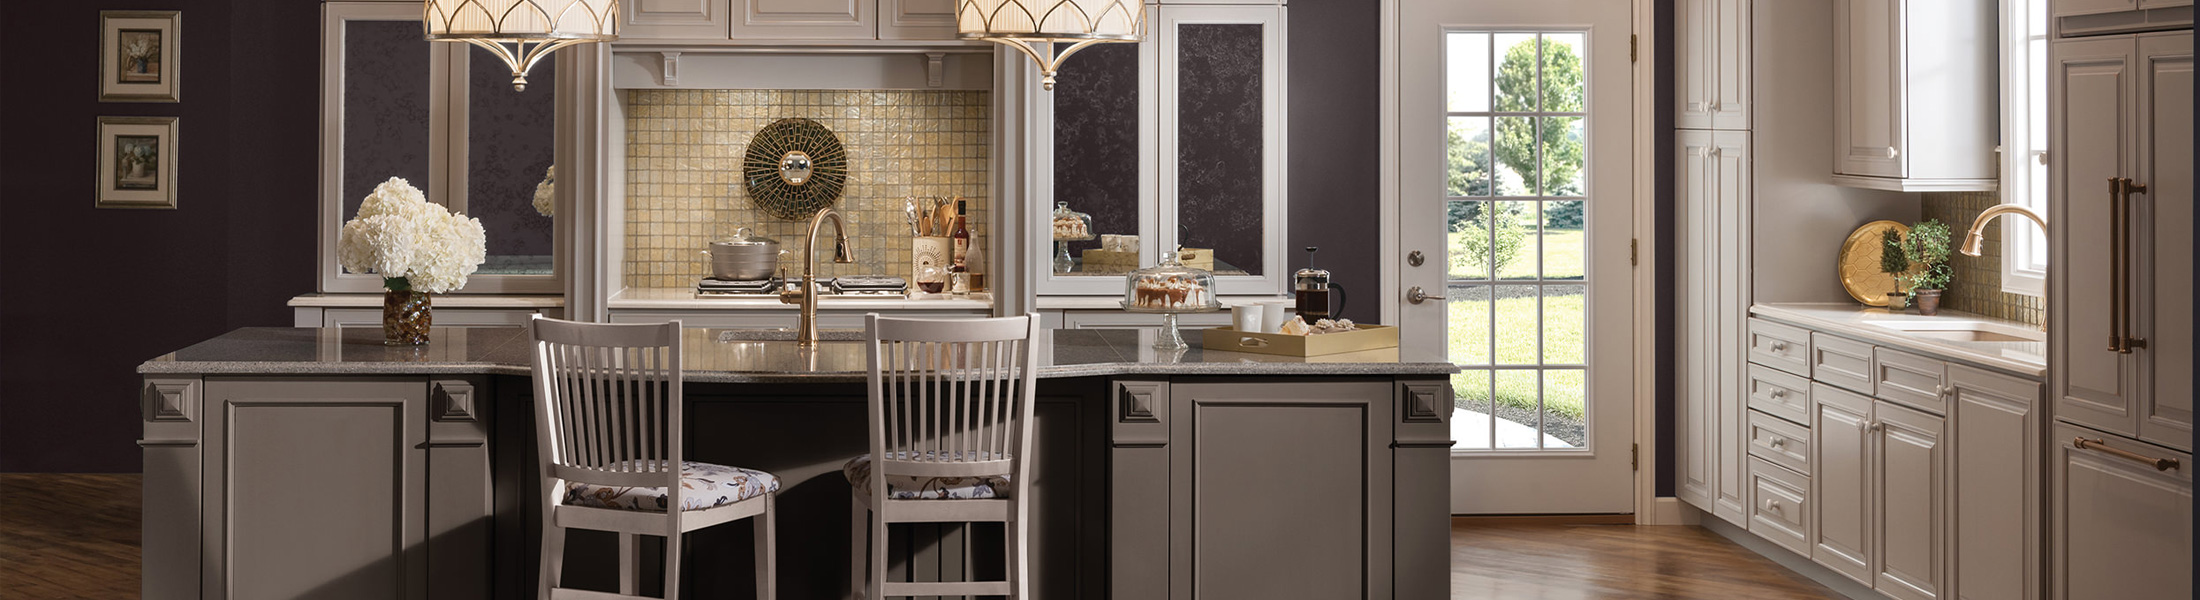 kitchen cabinetry island designs millwork